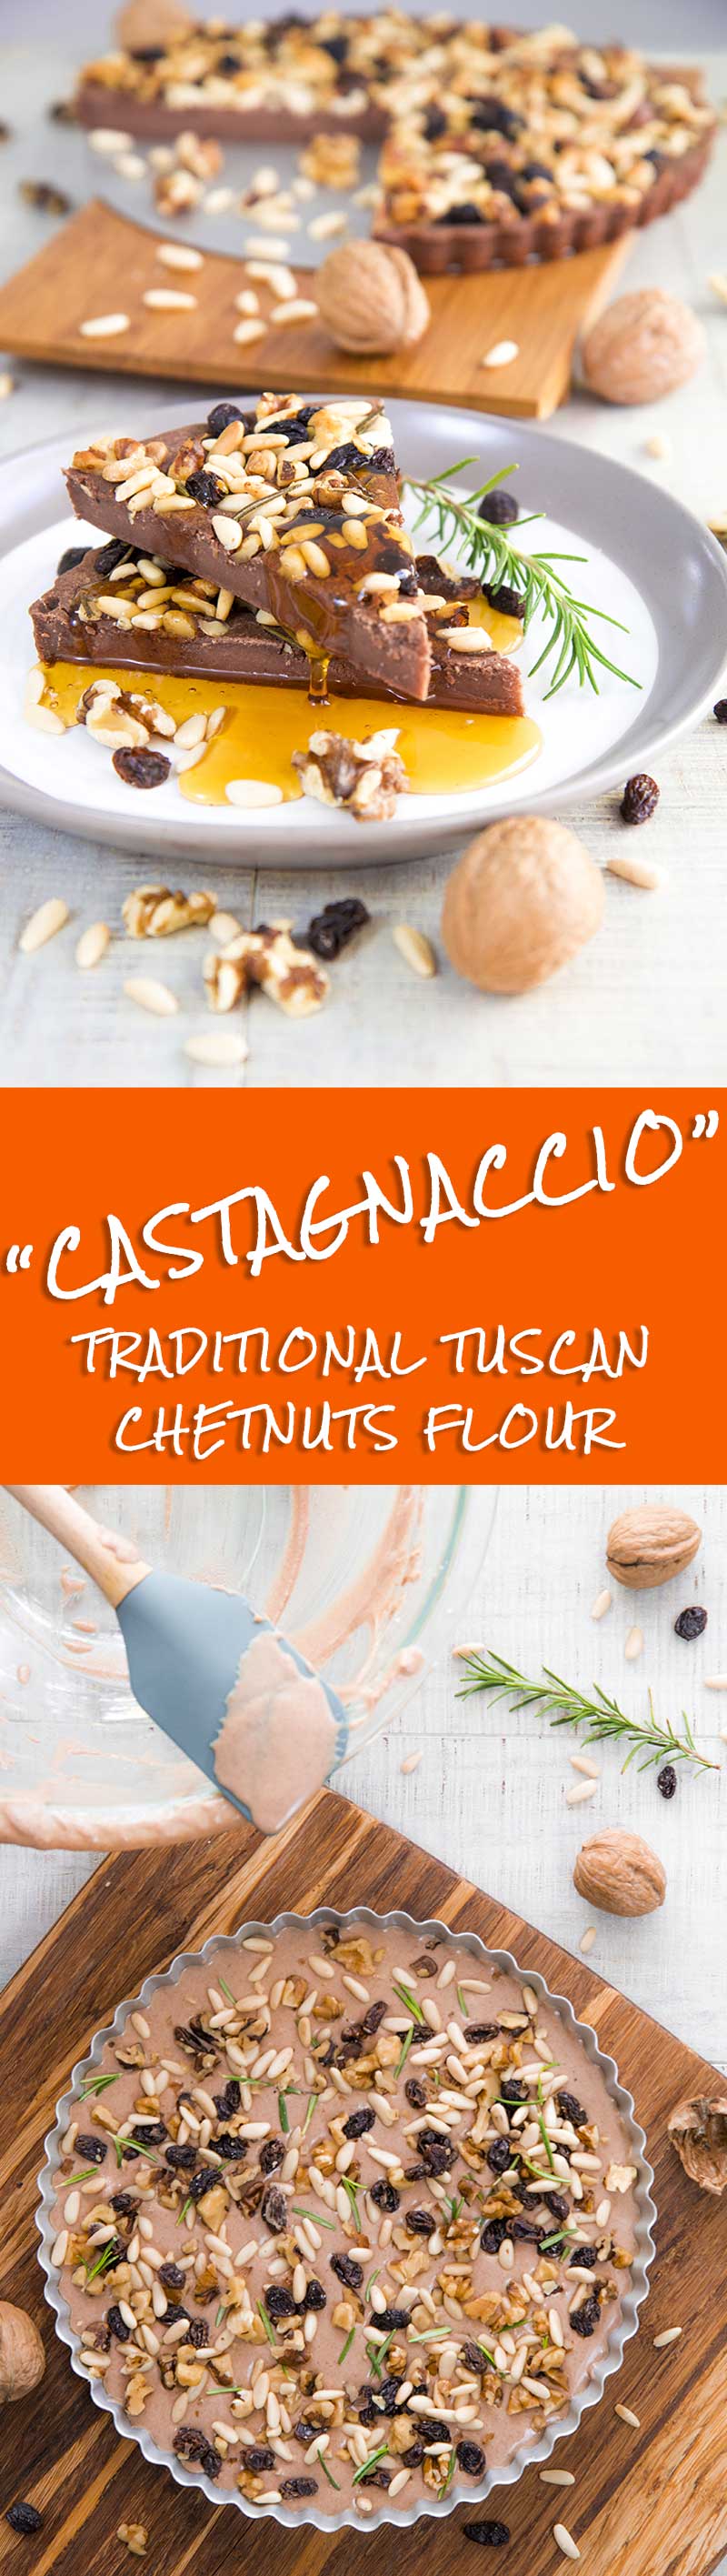 CASTAGNACCIO RECIPE - Tuscan style chestnut flour cake